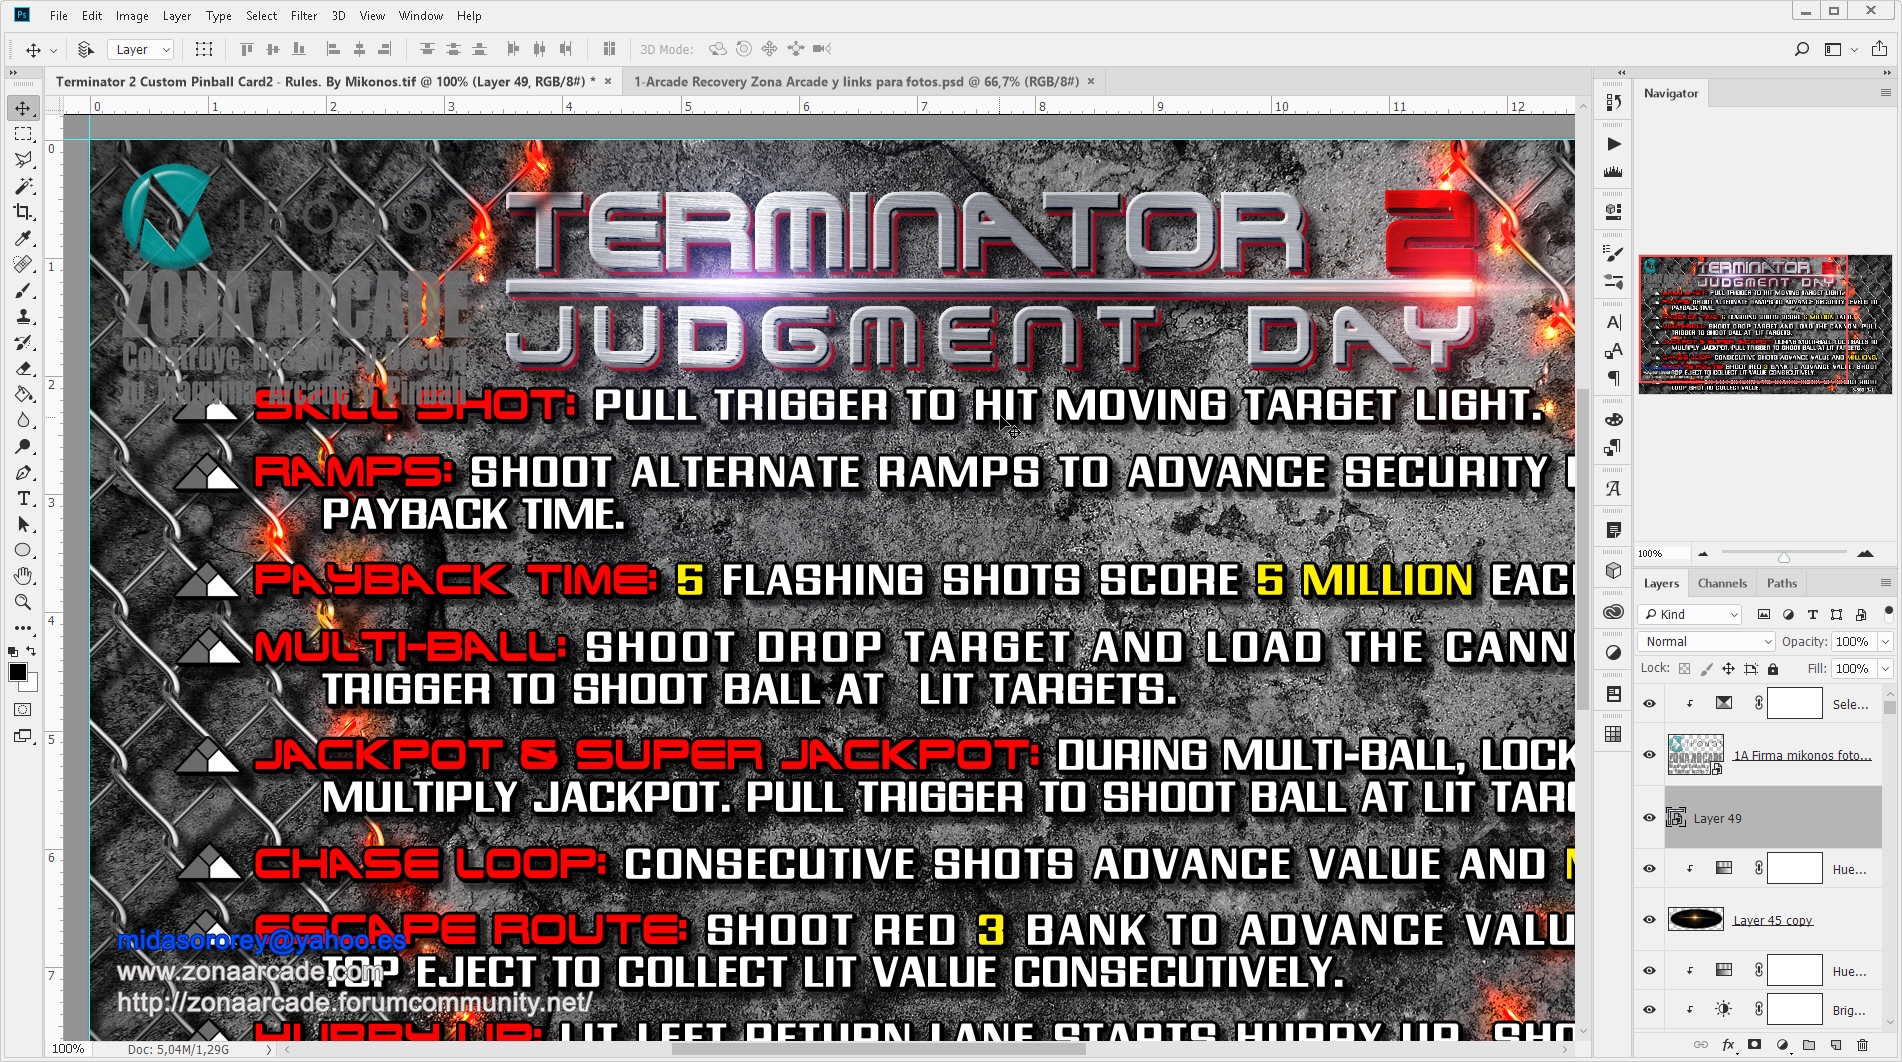 Terminator-2-Custom-Pinball-Card-Rules2-Mikonos2